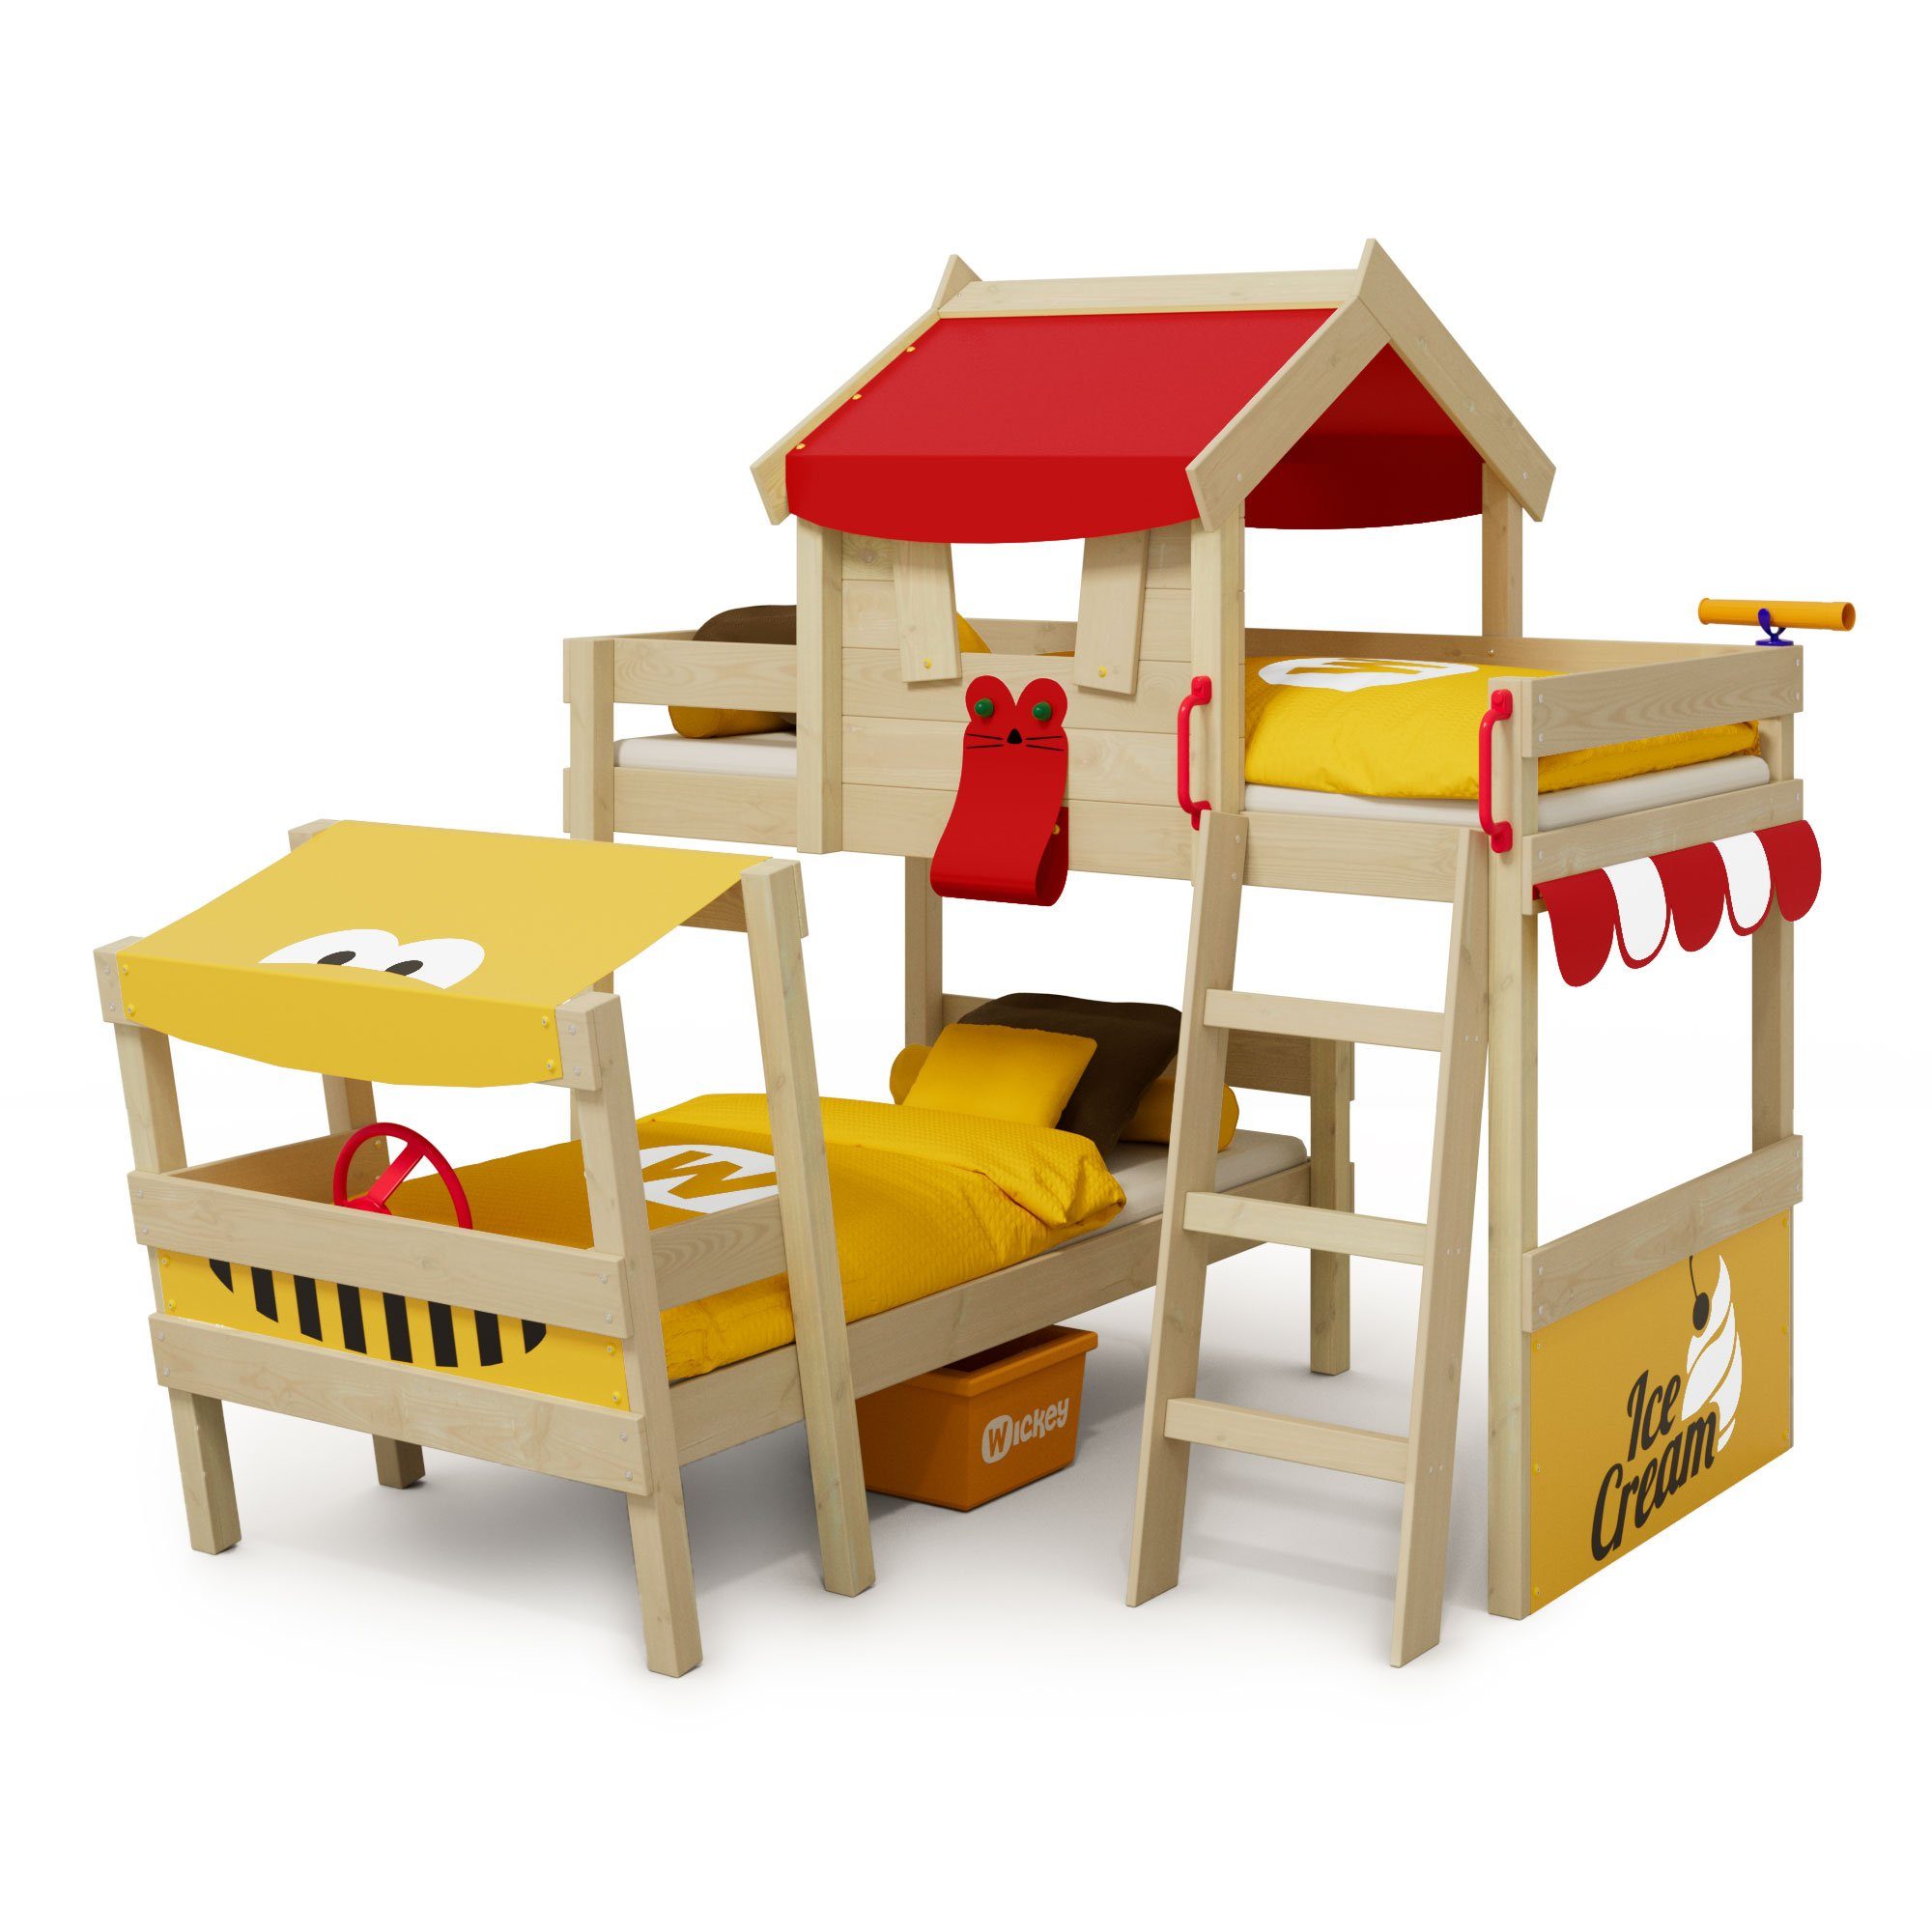 Wickey Kinderbett Crazy Trunky - Spielbett, 90 x 200 cm Hochbett (Holzpaket aus Pfosten und Brettern, Spielbett für Kinder), Massivholzbrett rot/gelb